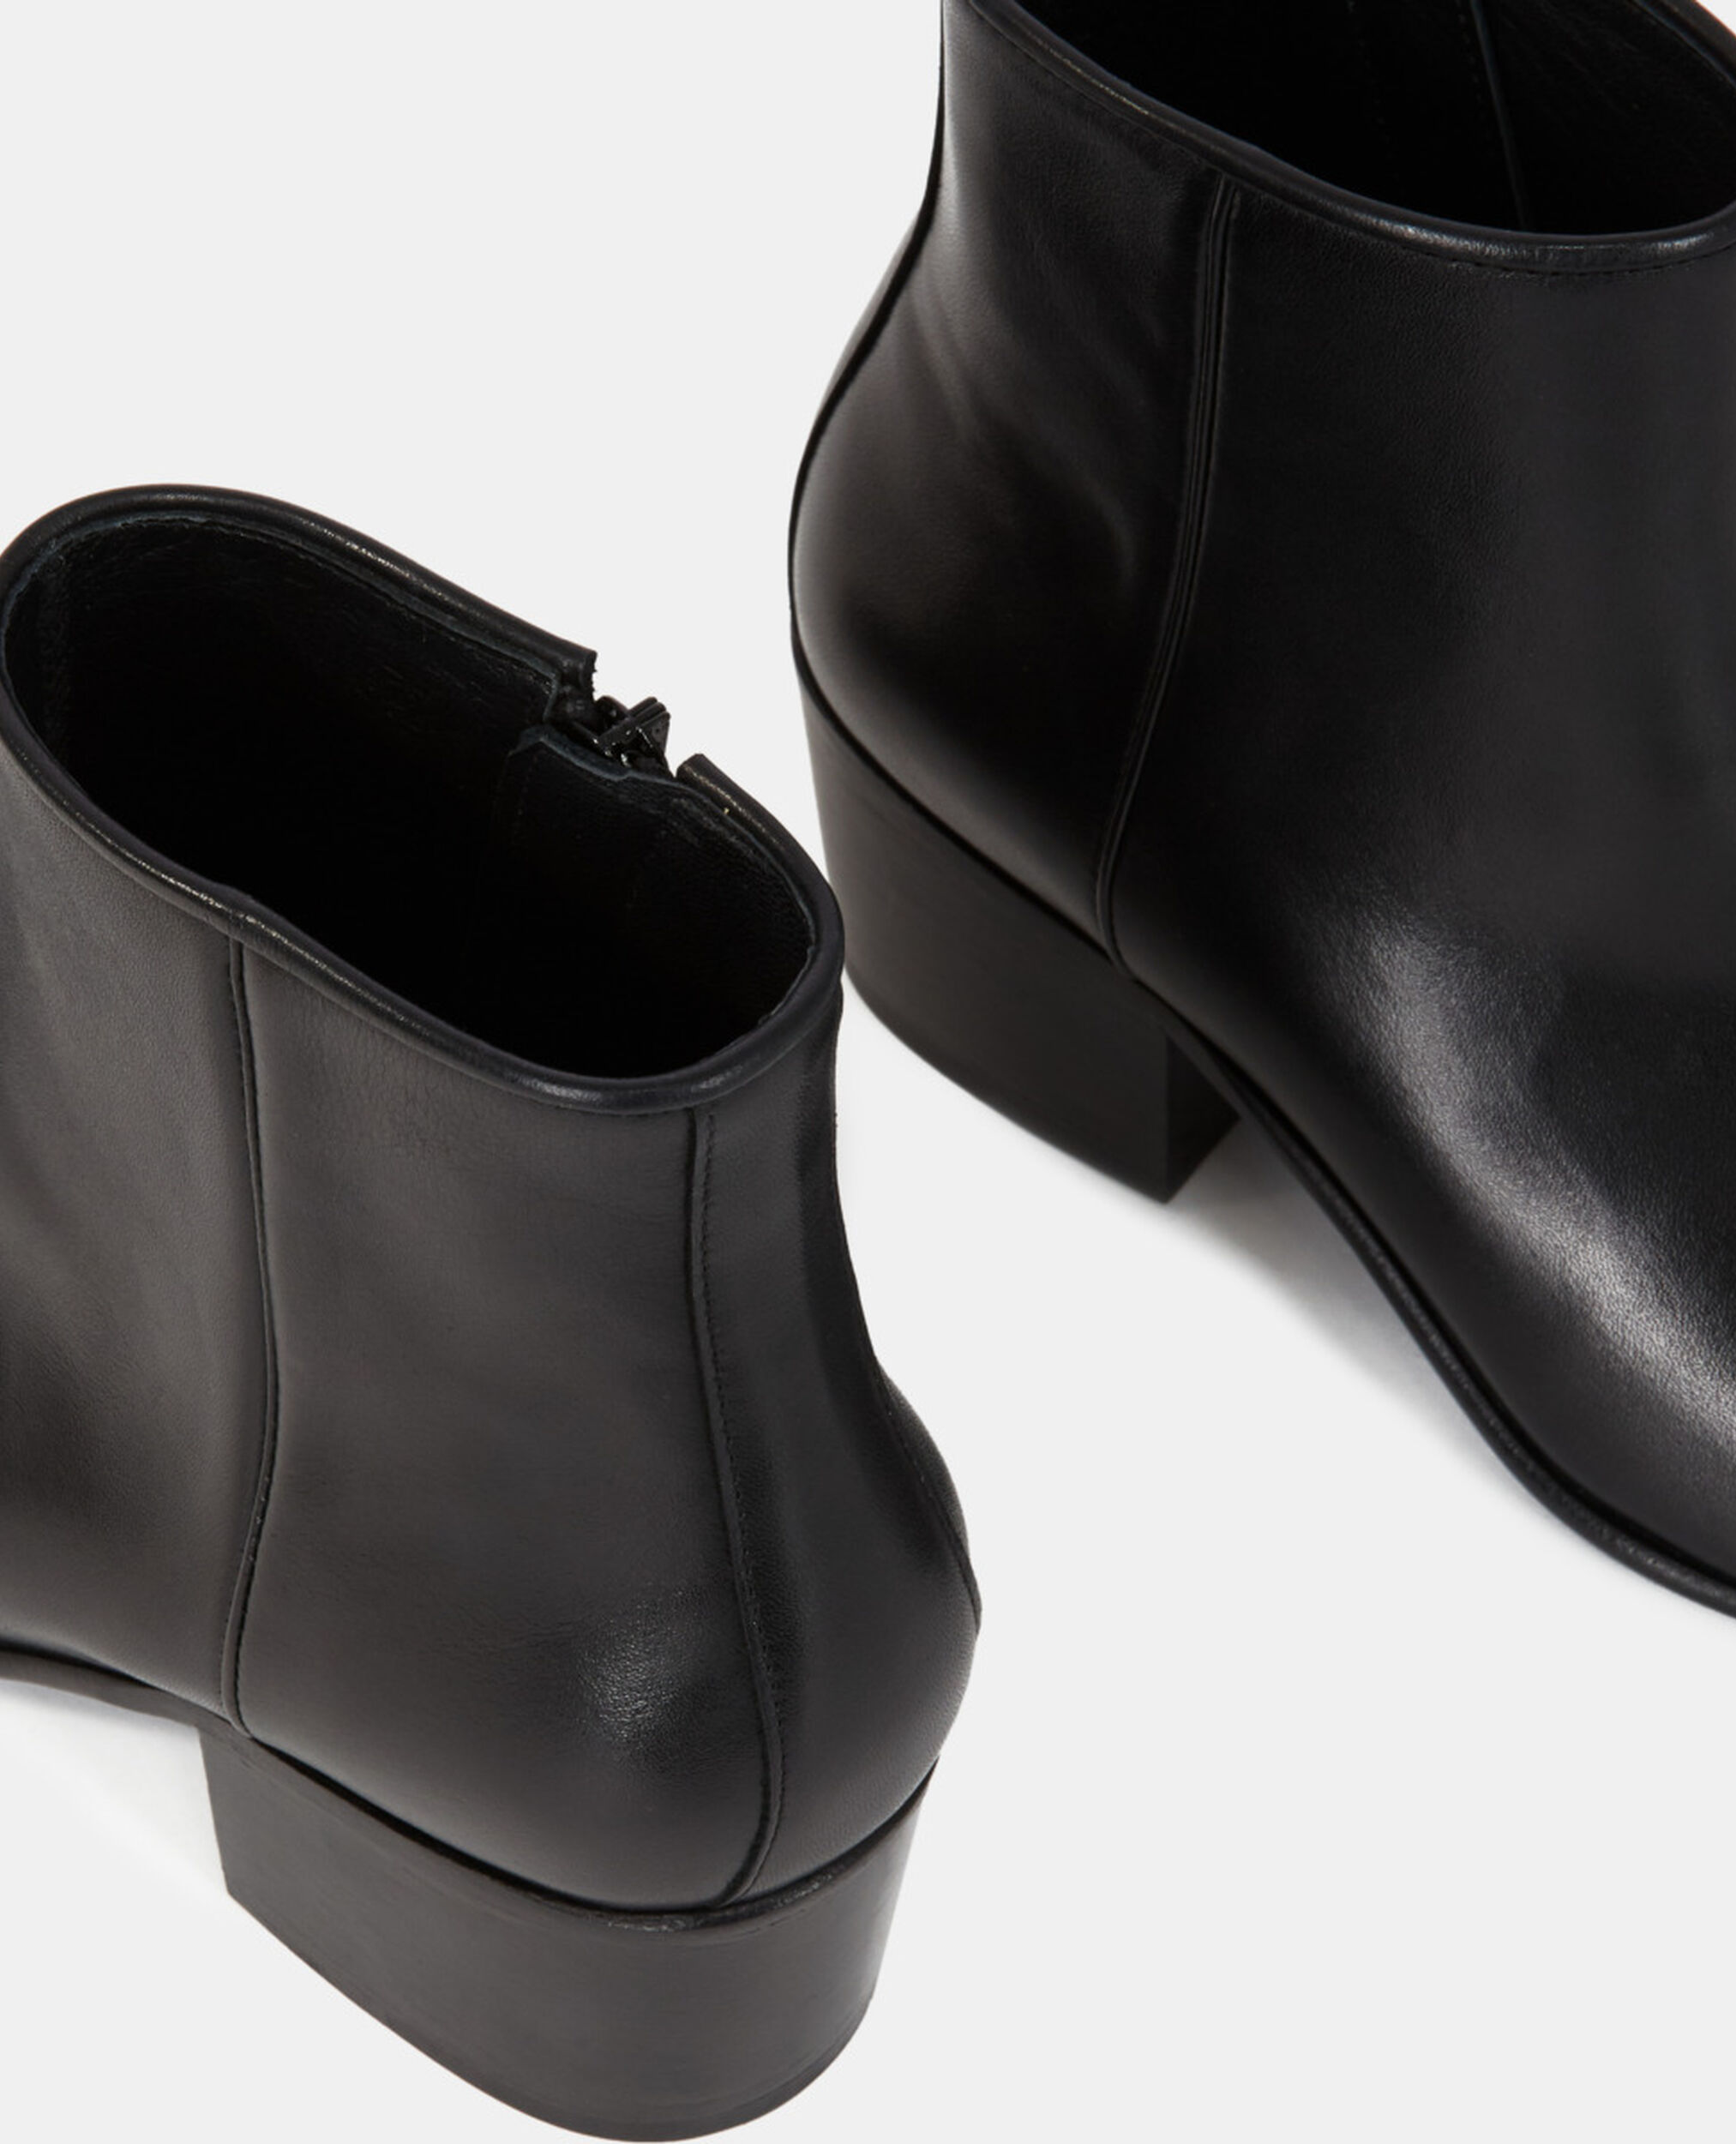 Boots talon carré en cuir noir, BLACK, hi-res image number null